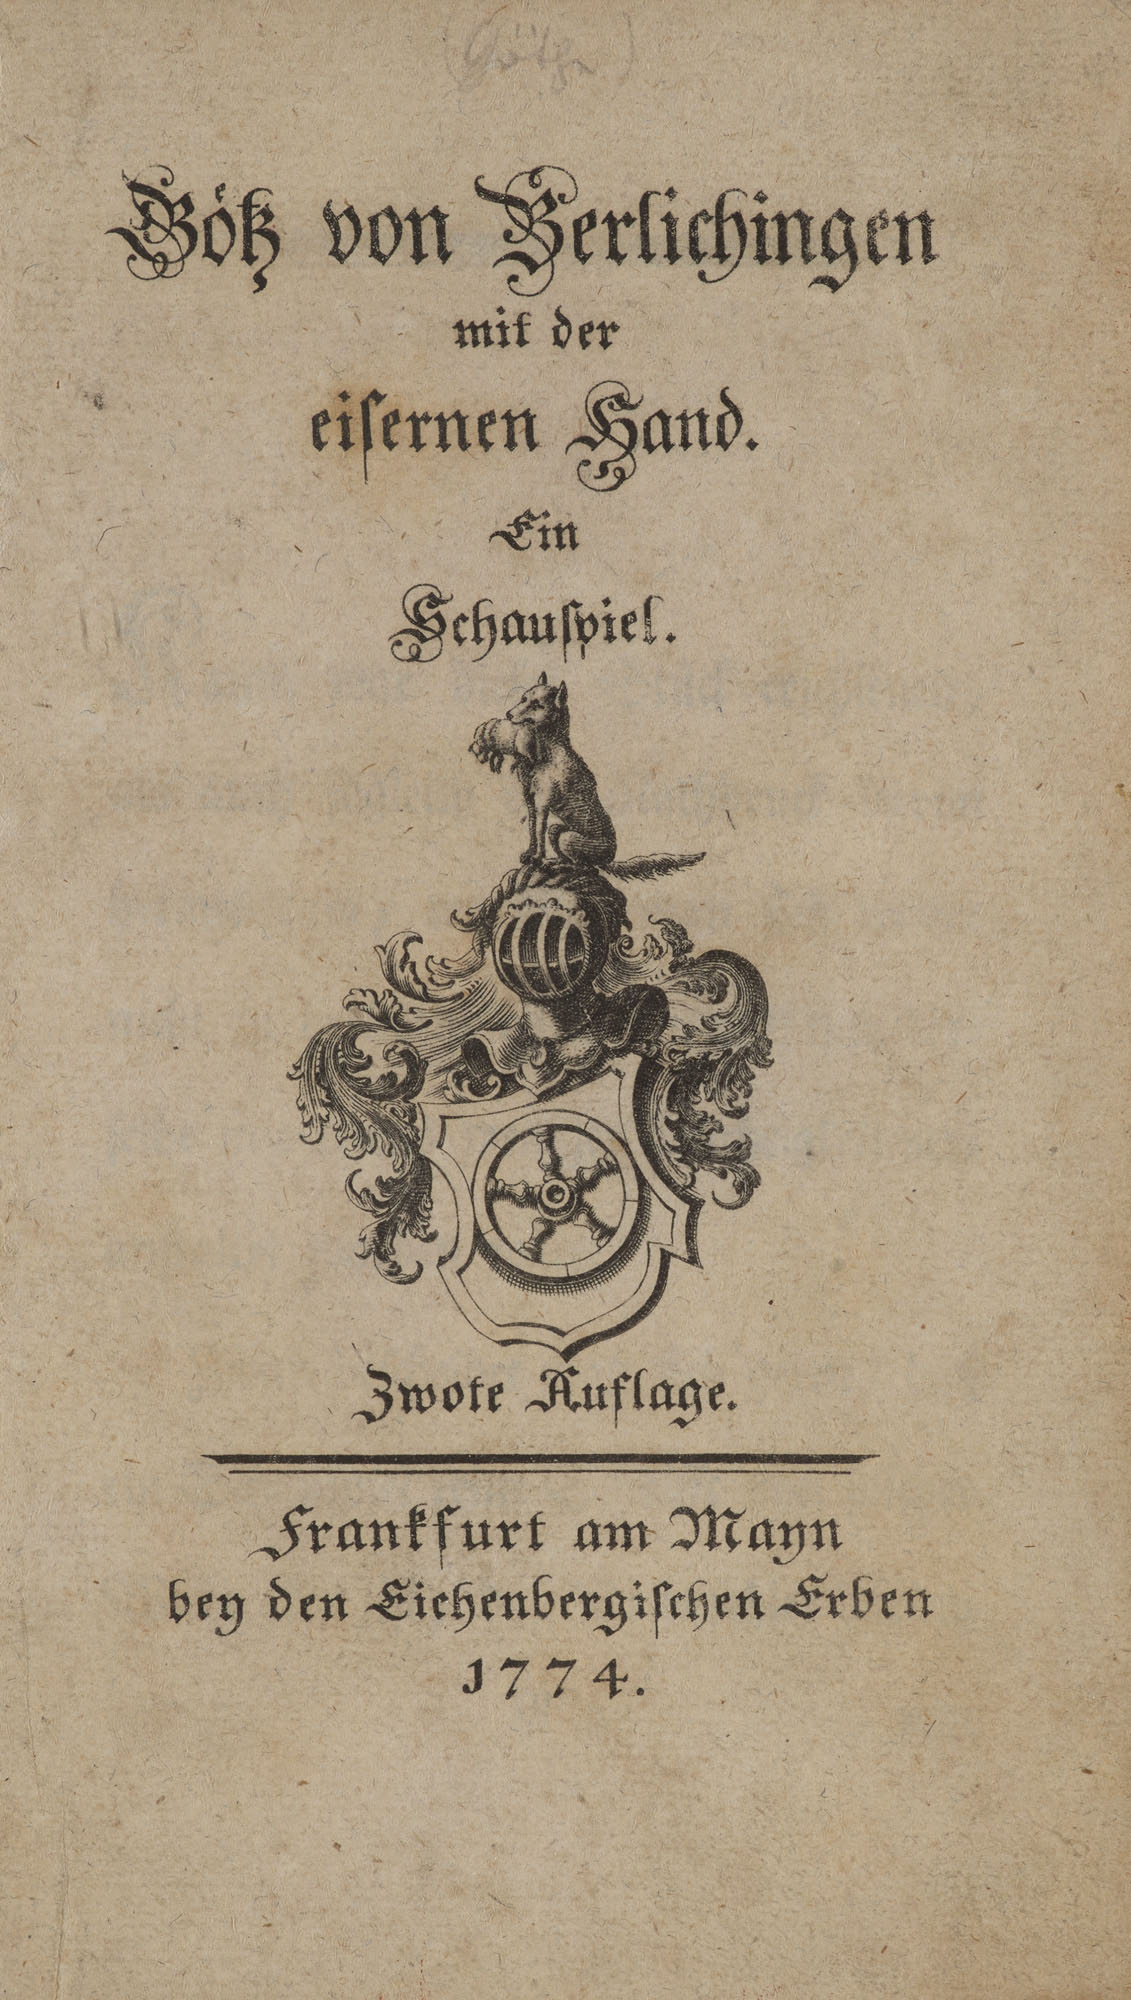 Johann Wolfgang von Goethe. Götz von